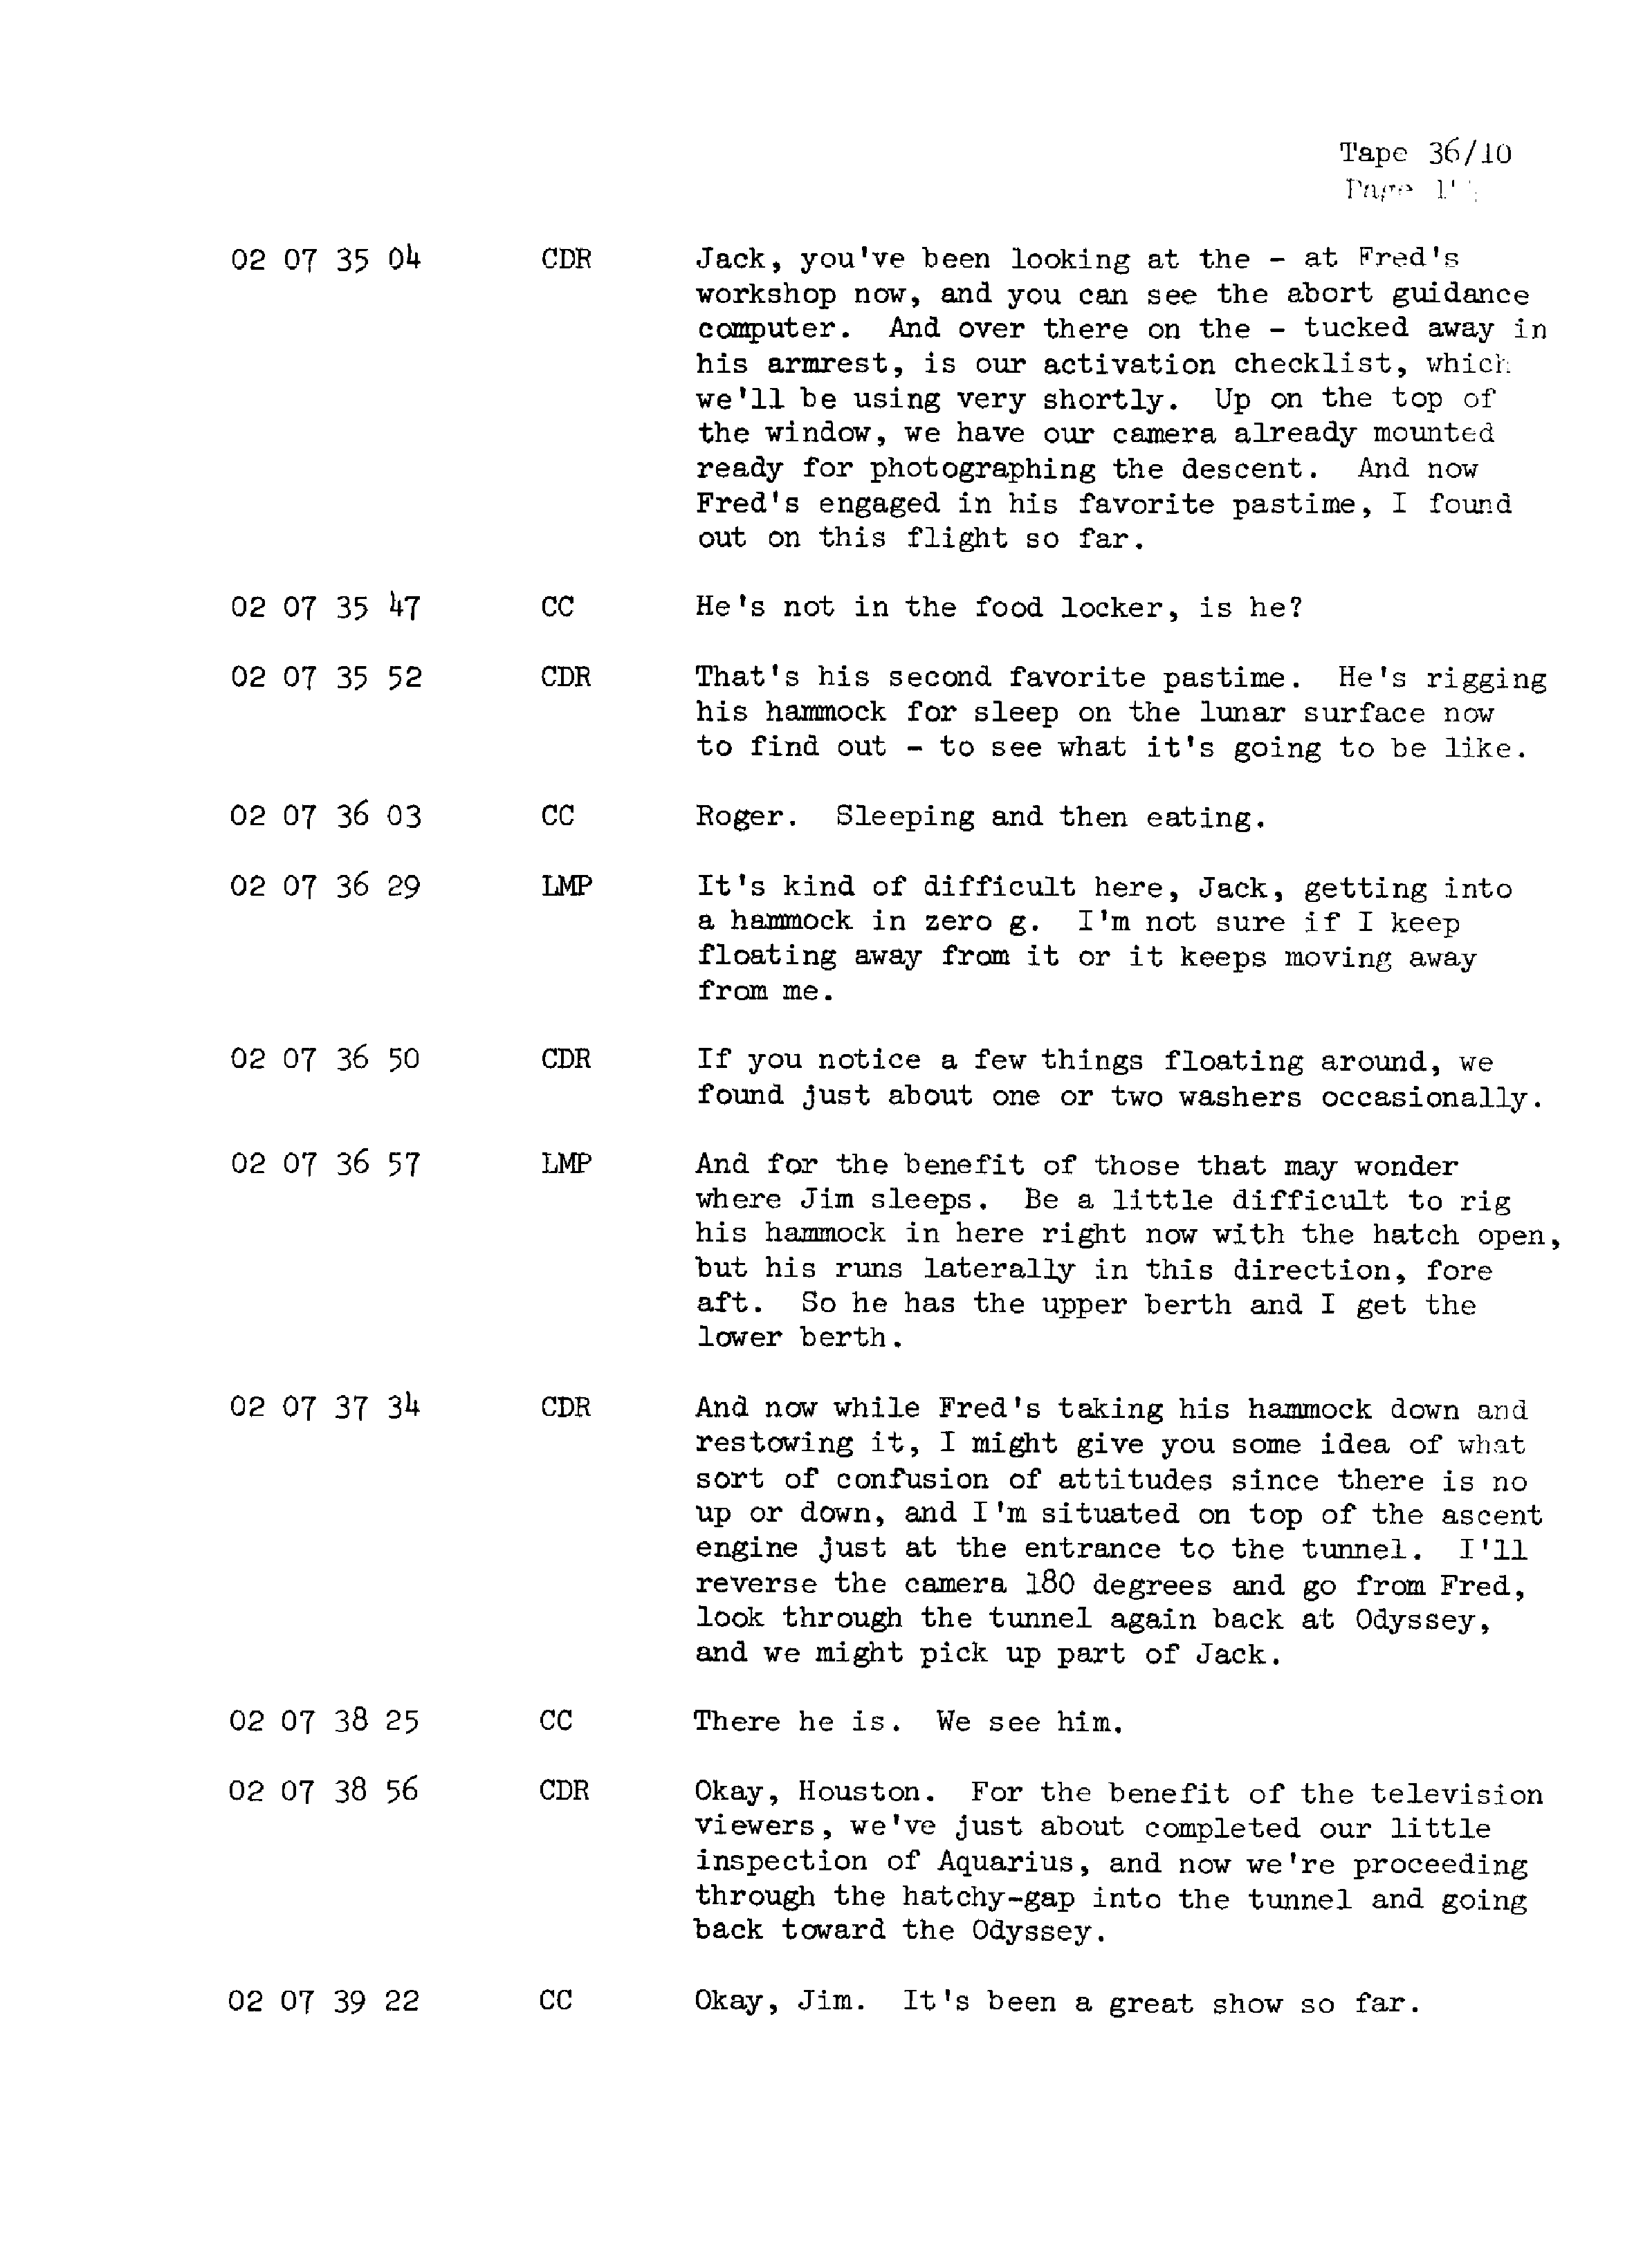 Page 164 of Apollo 13’s original transcript